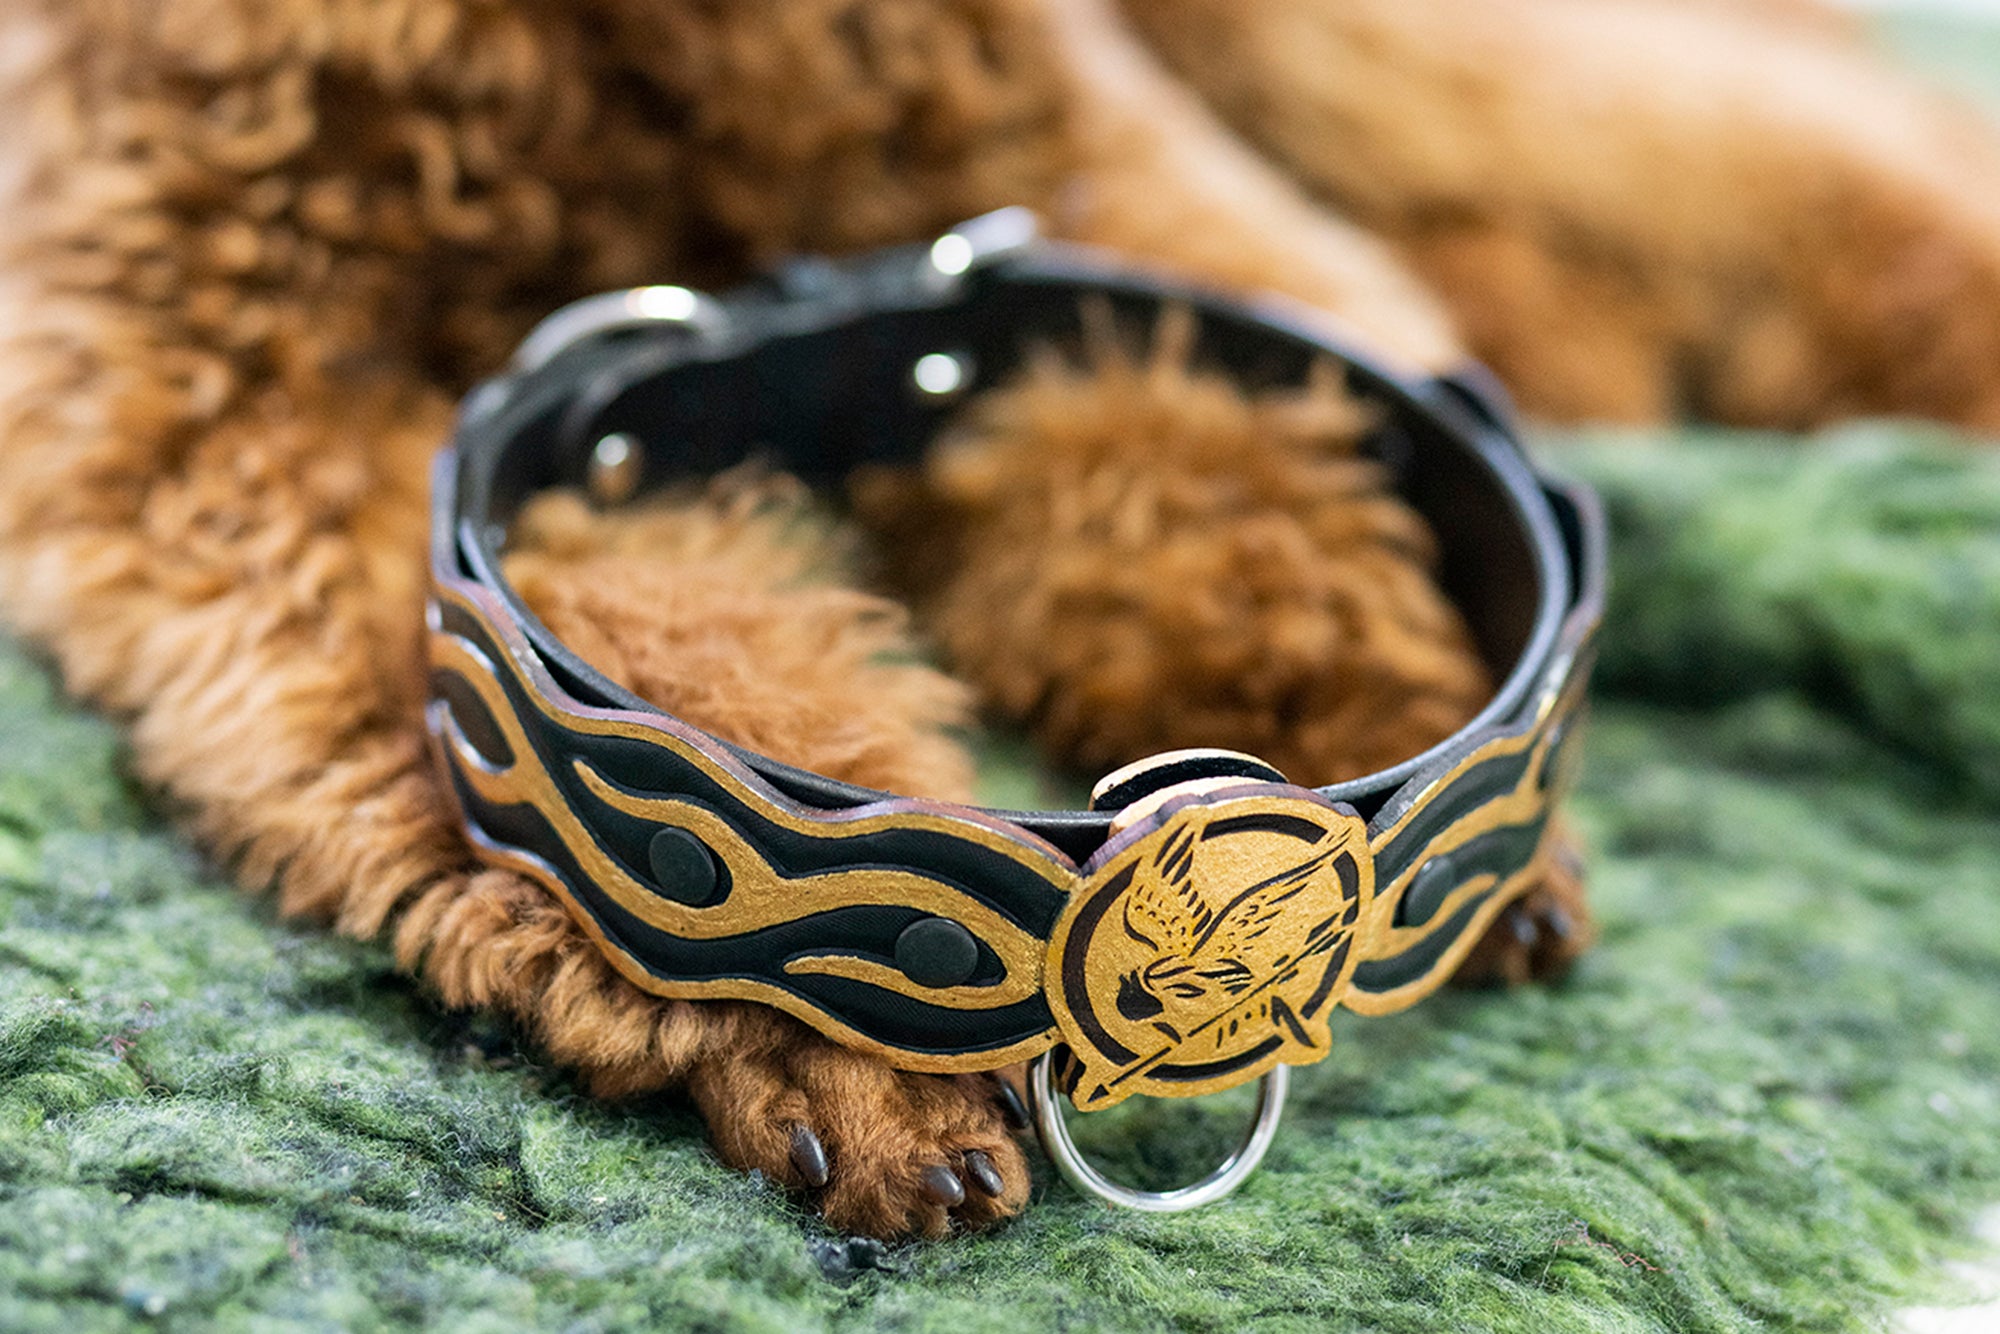 bracelet of finnick odair by MilleFolliedellaRo on DeviantArt